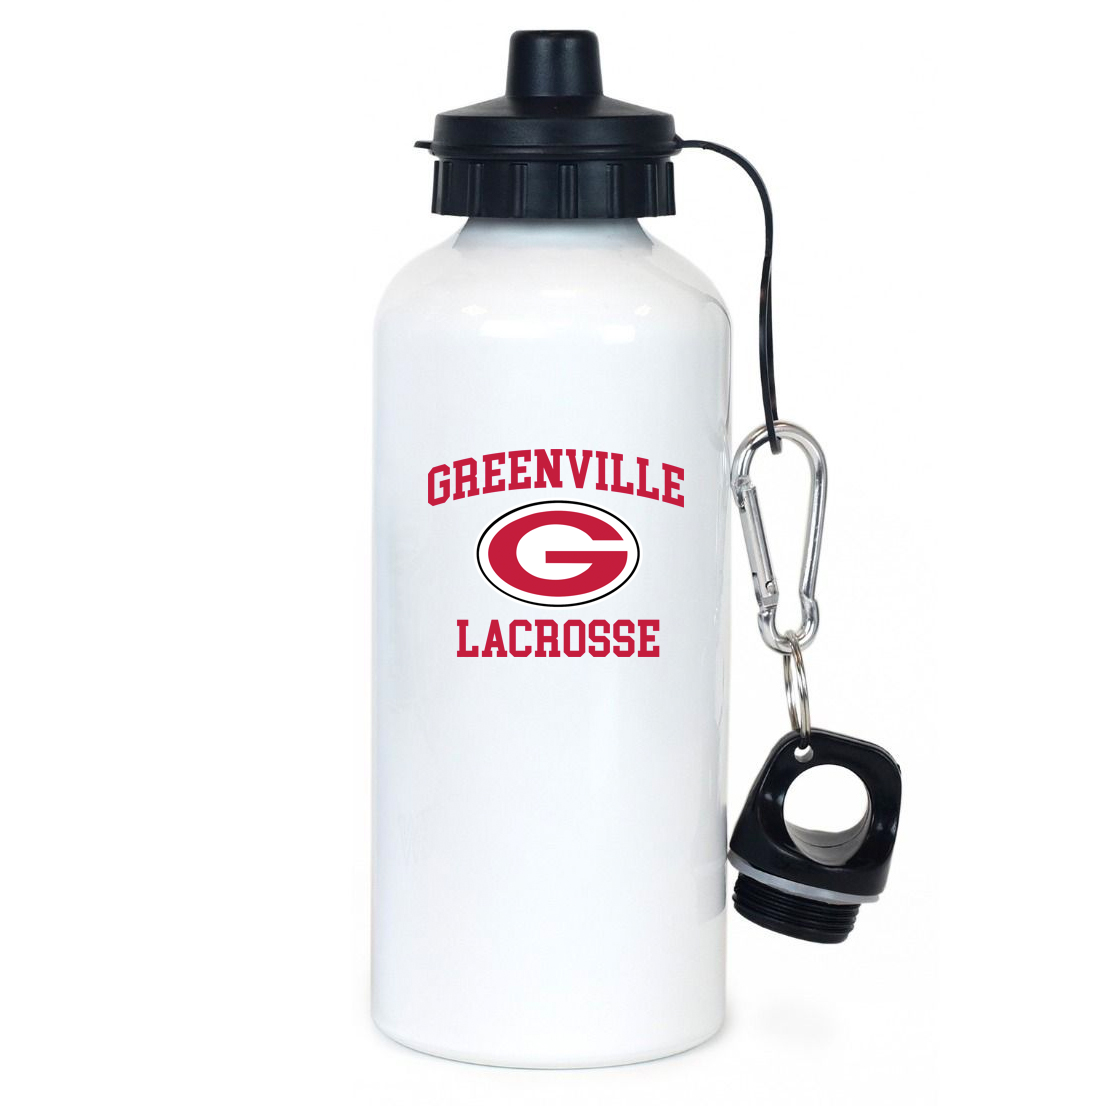 Greenville Lacrosse Team Water Bottle